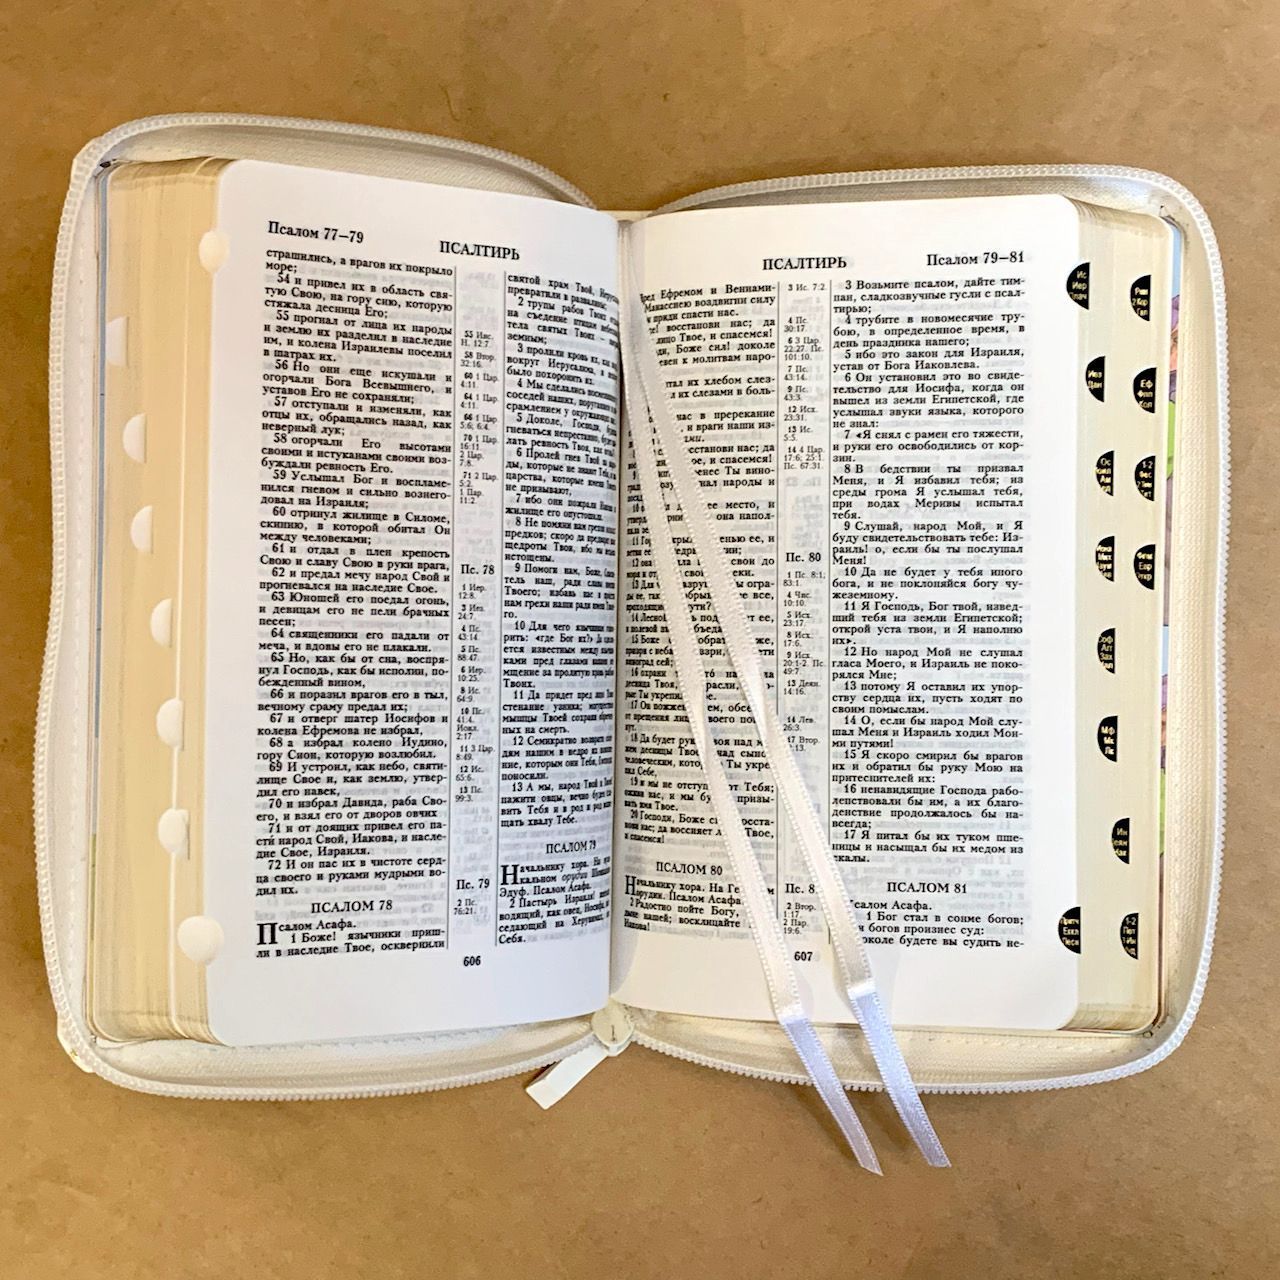 Библия 048 zti  код B10 дизайн "Сердце", кожаный переплет на молнии с индексами, цвет белый, формат 125*190 мм, золотой обрез, синодальный перевод, шрифт 10-11 кегель